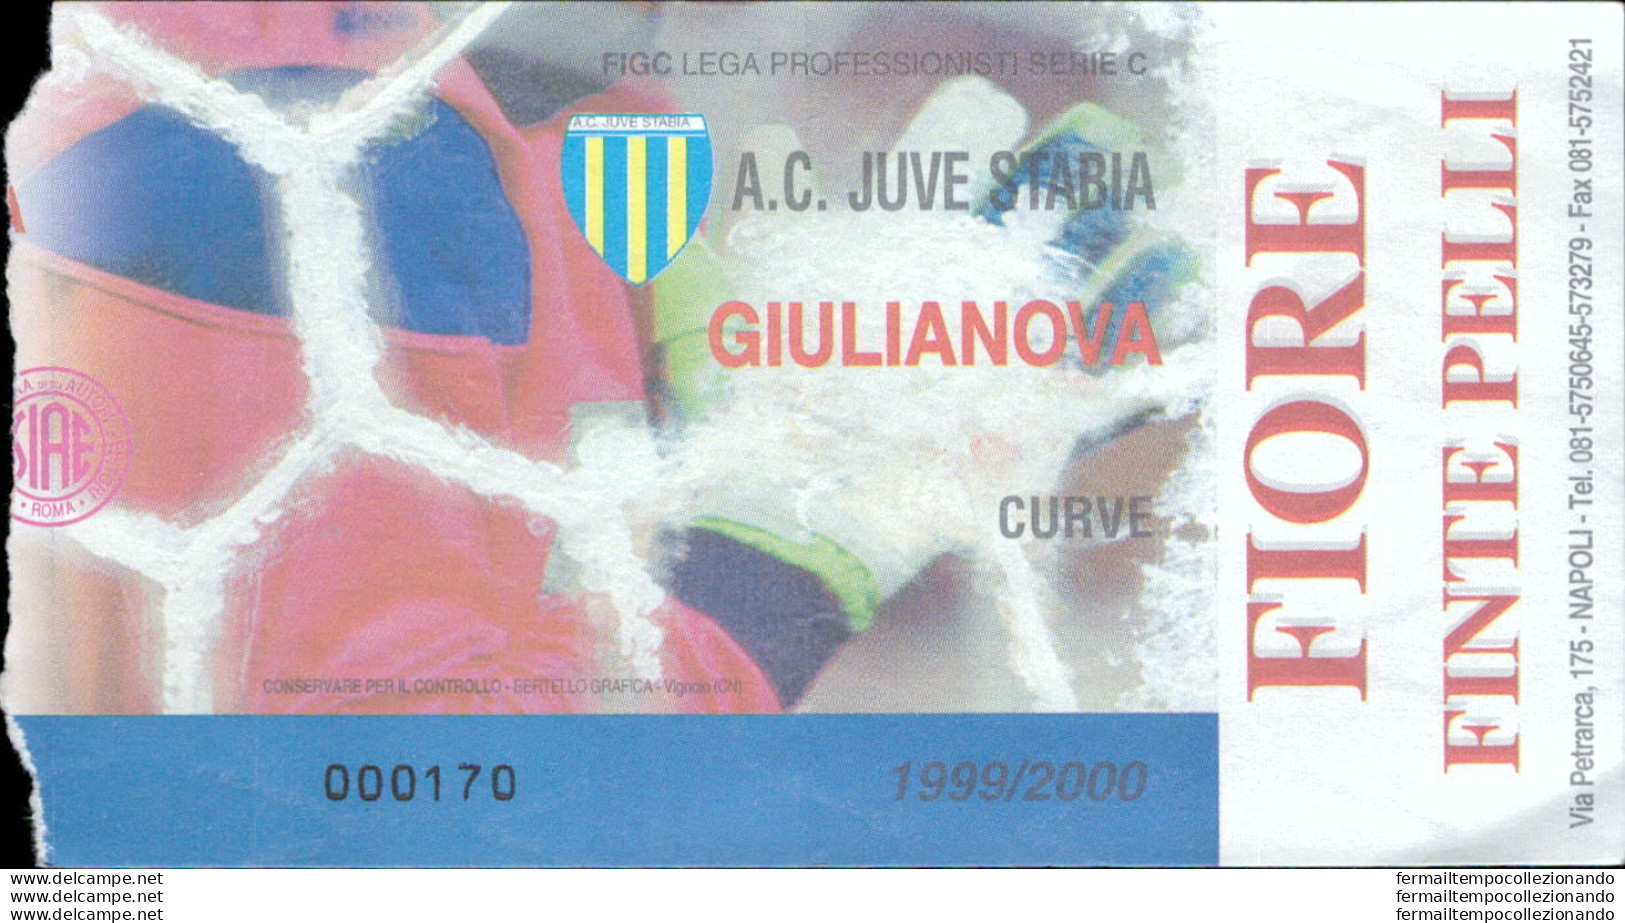 Bl83 Biglietto Calcio Ticket Juve Stabia - Giulianova - Tickets - Vouchers